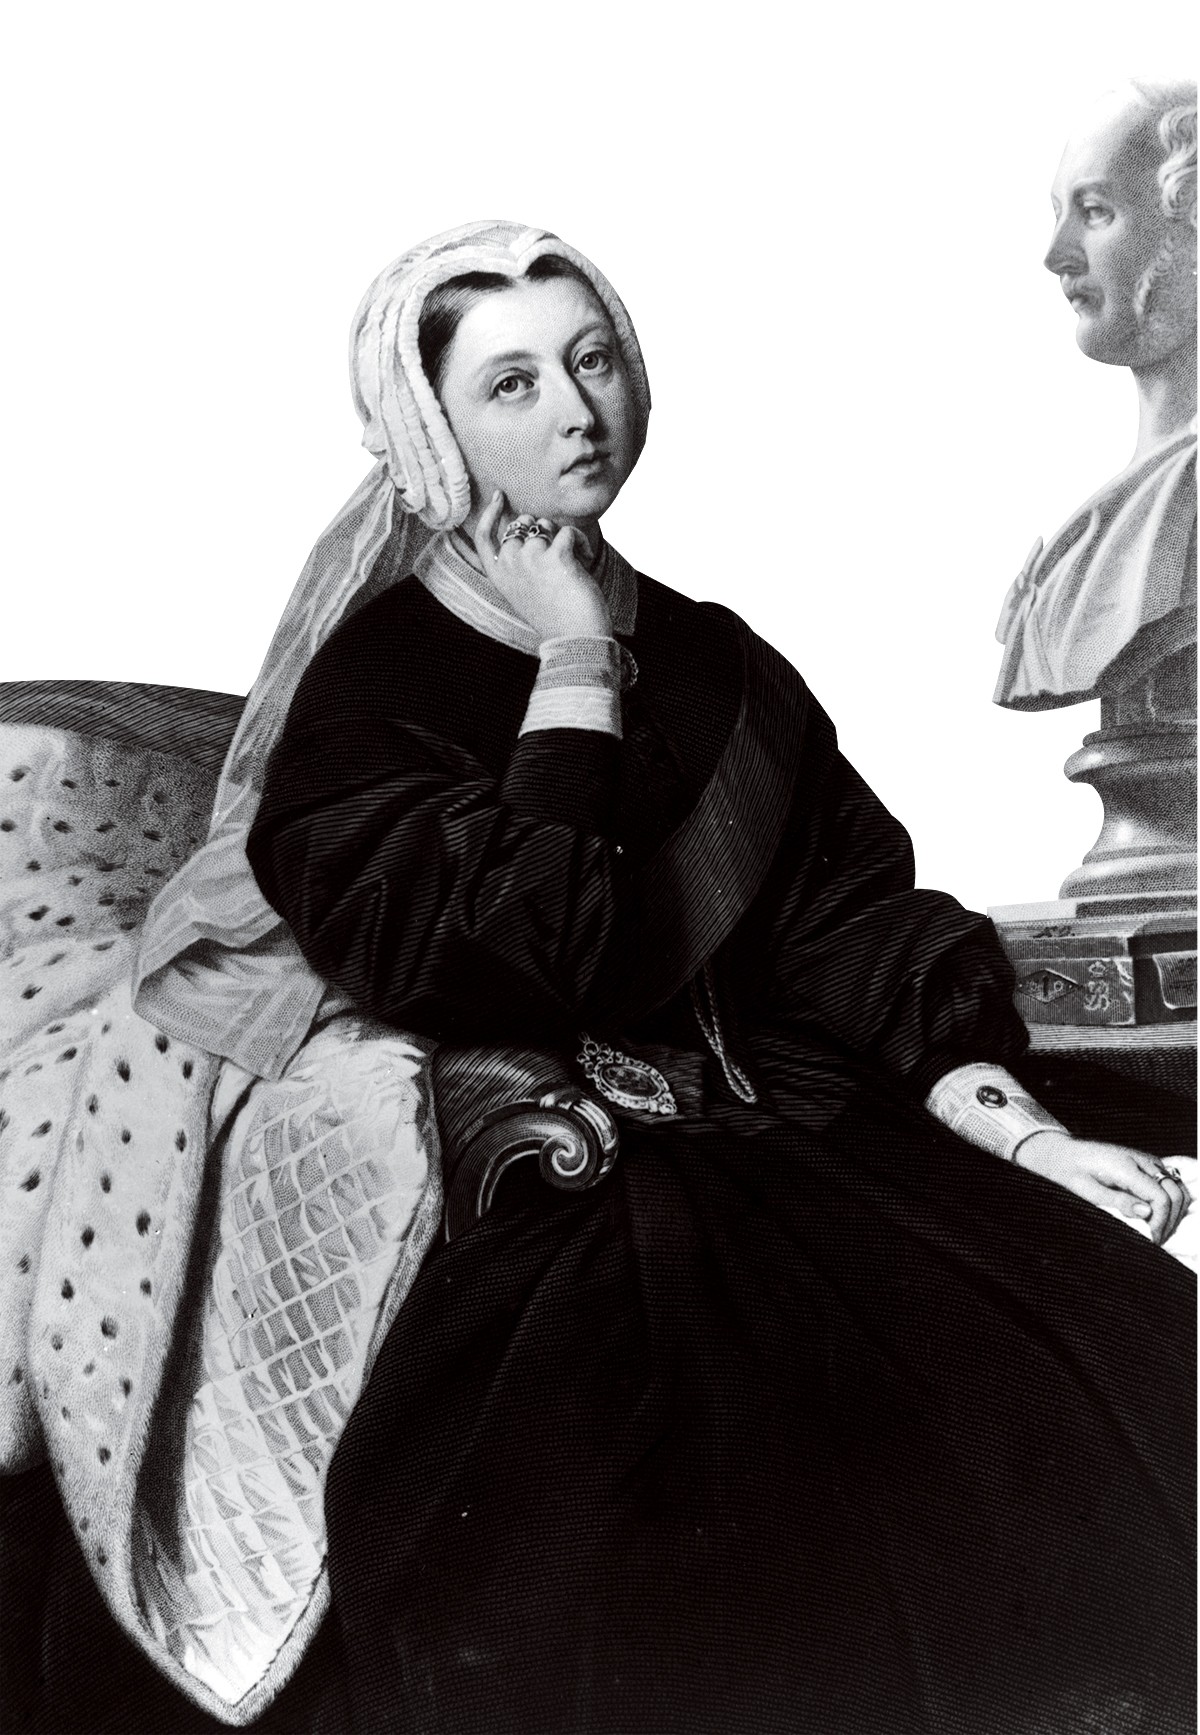 Retrato de 1864 da Rainha Vitória em luto pela perda do marido (Foto: Getty Images)